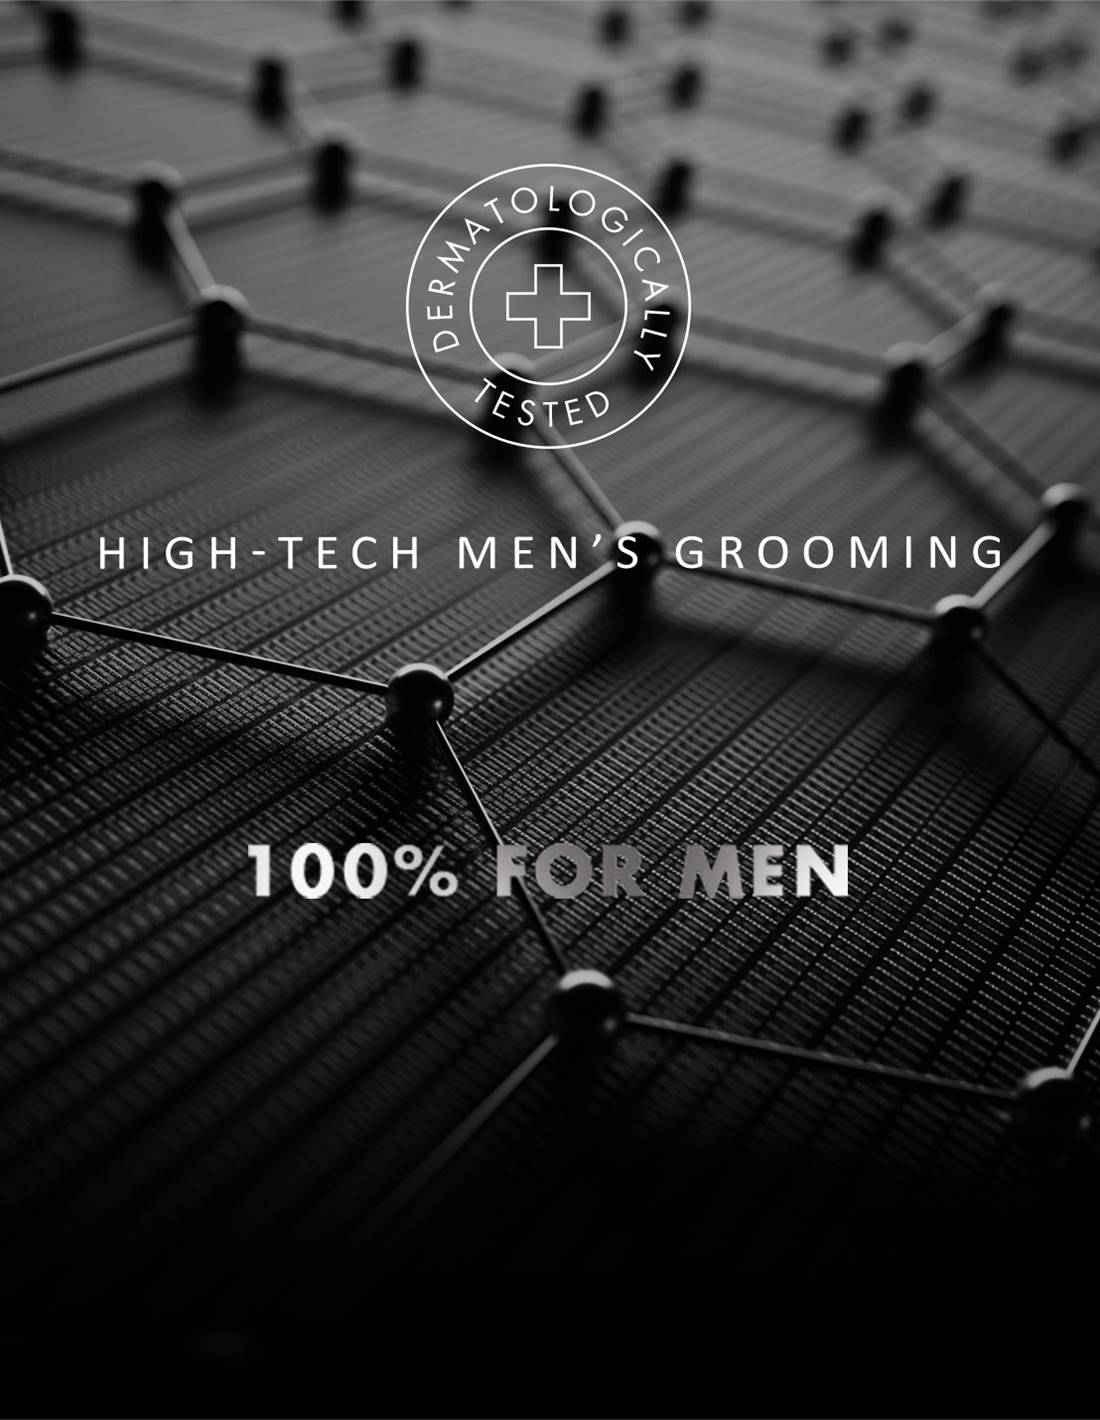 High-tech men's grooming, 100% for men